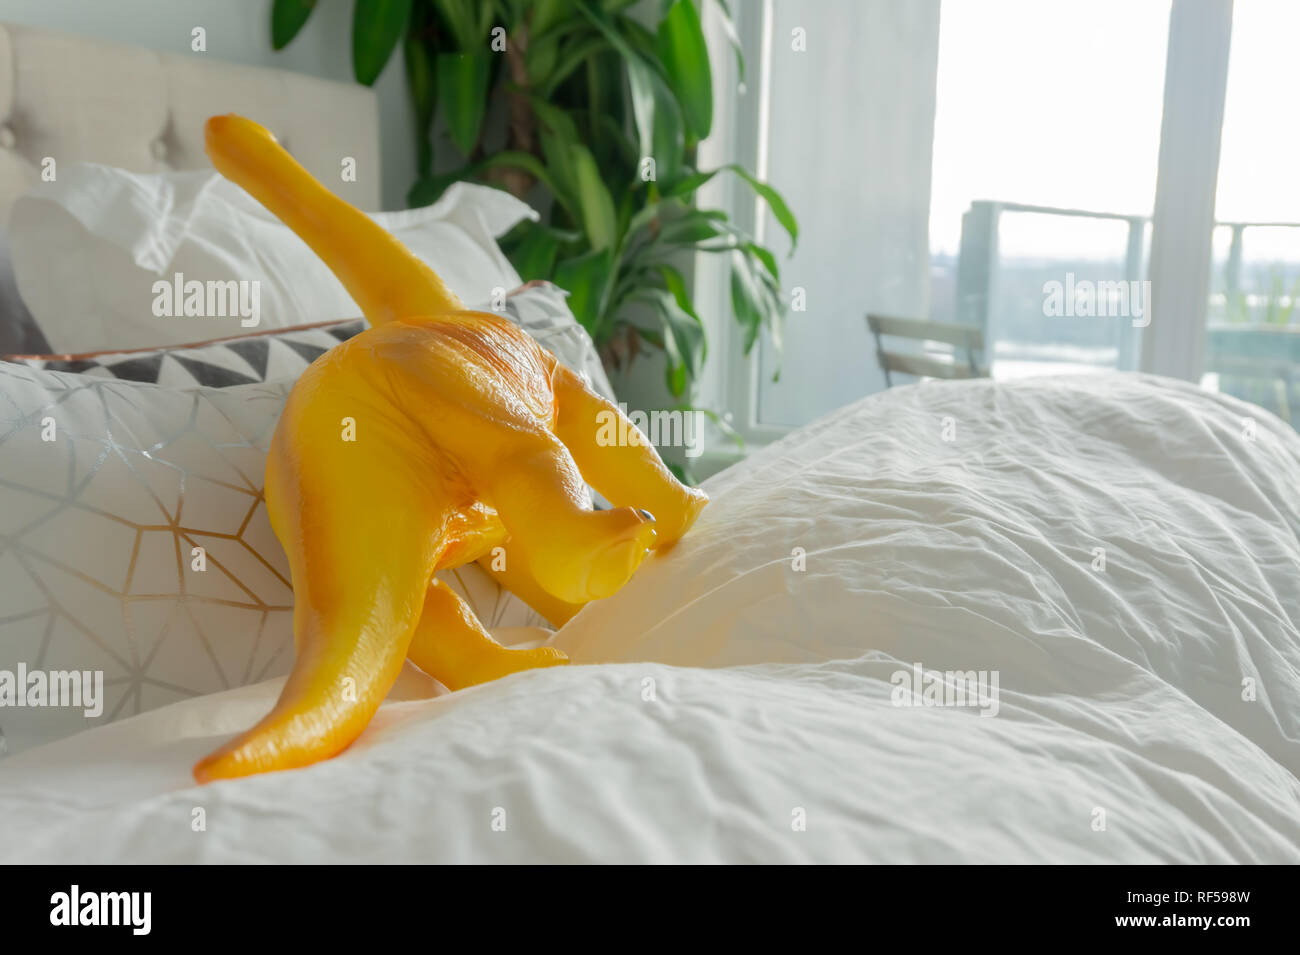 Gelb Spielzeug Dinosaurier in übergeordneten Bett, Darstellung von parenting Lebensstil und ein richtiges Zuhause. Stockfoto